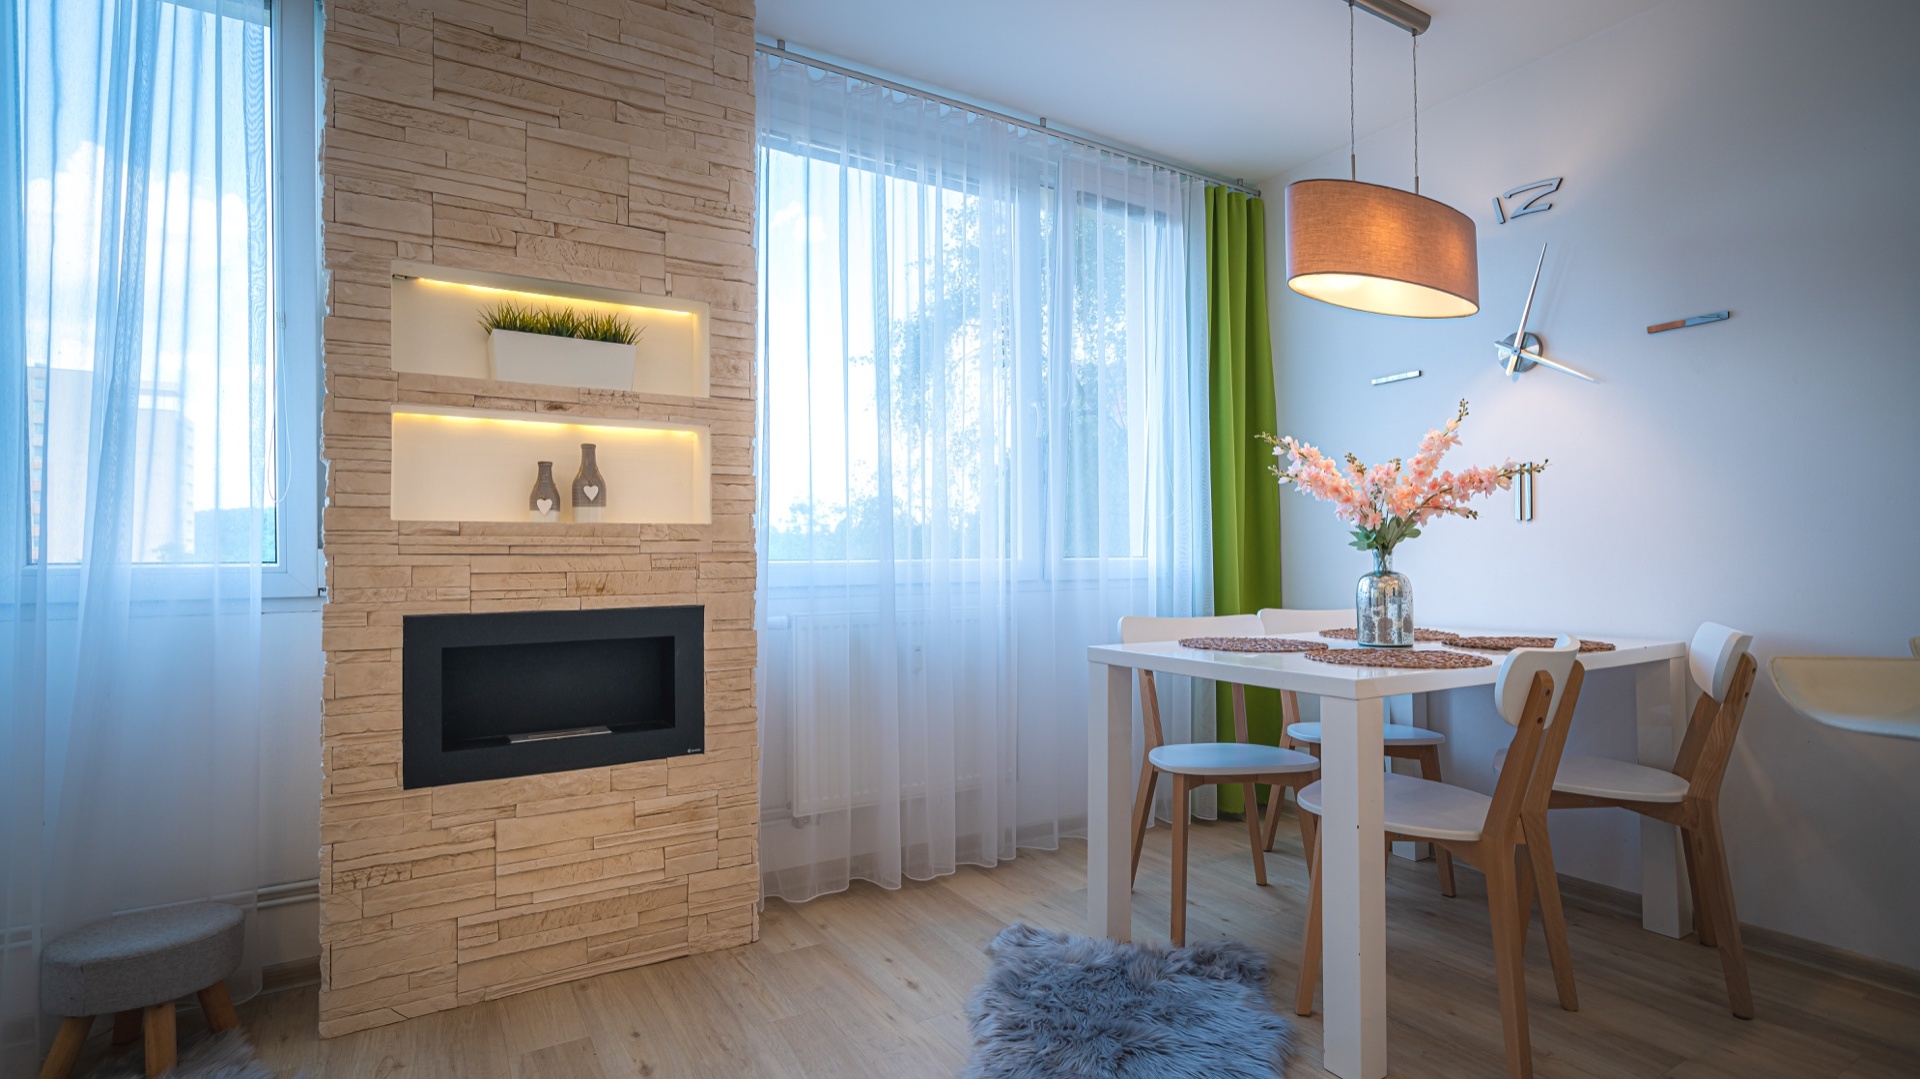 Moderní a luxusně zařízený byt nedaleko Krčského lesa